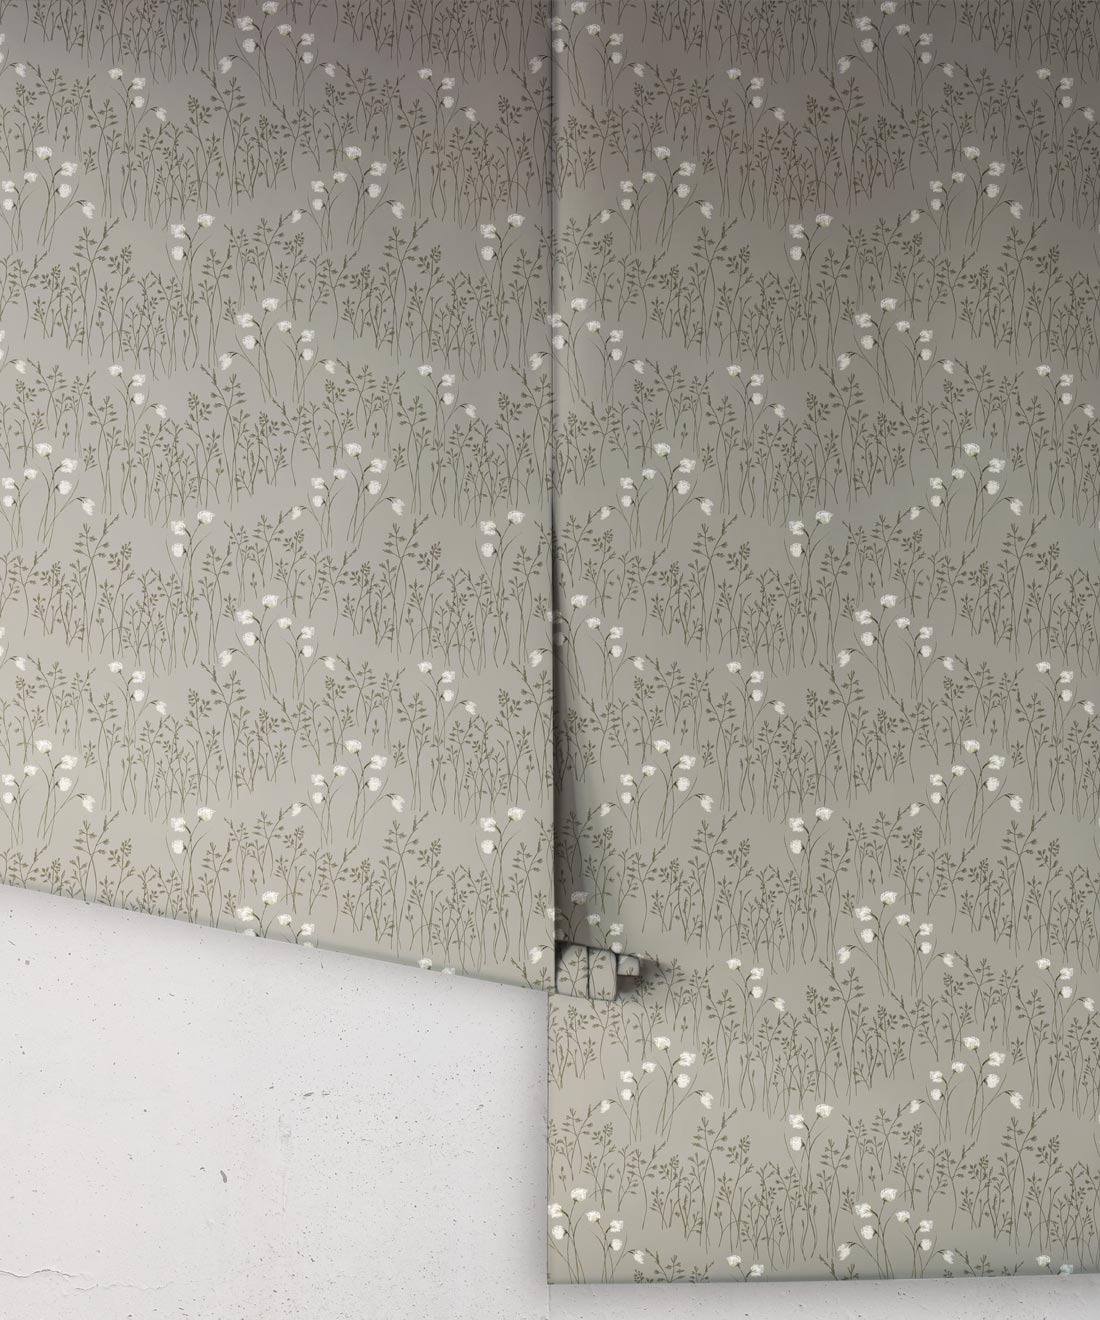 Cotton Grass Wallpaper • Hackney & Co. • Moss Green • Roll